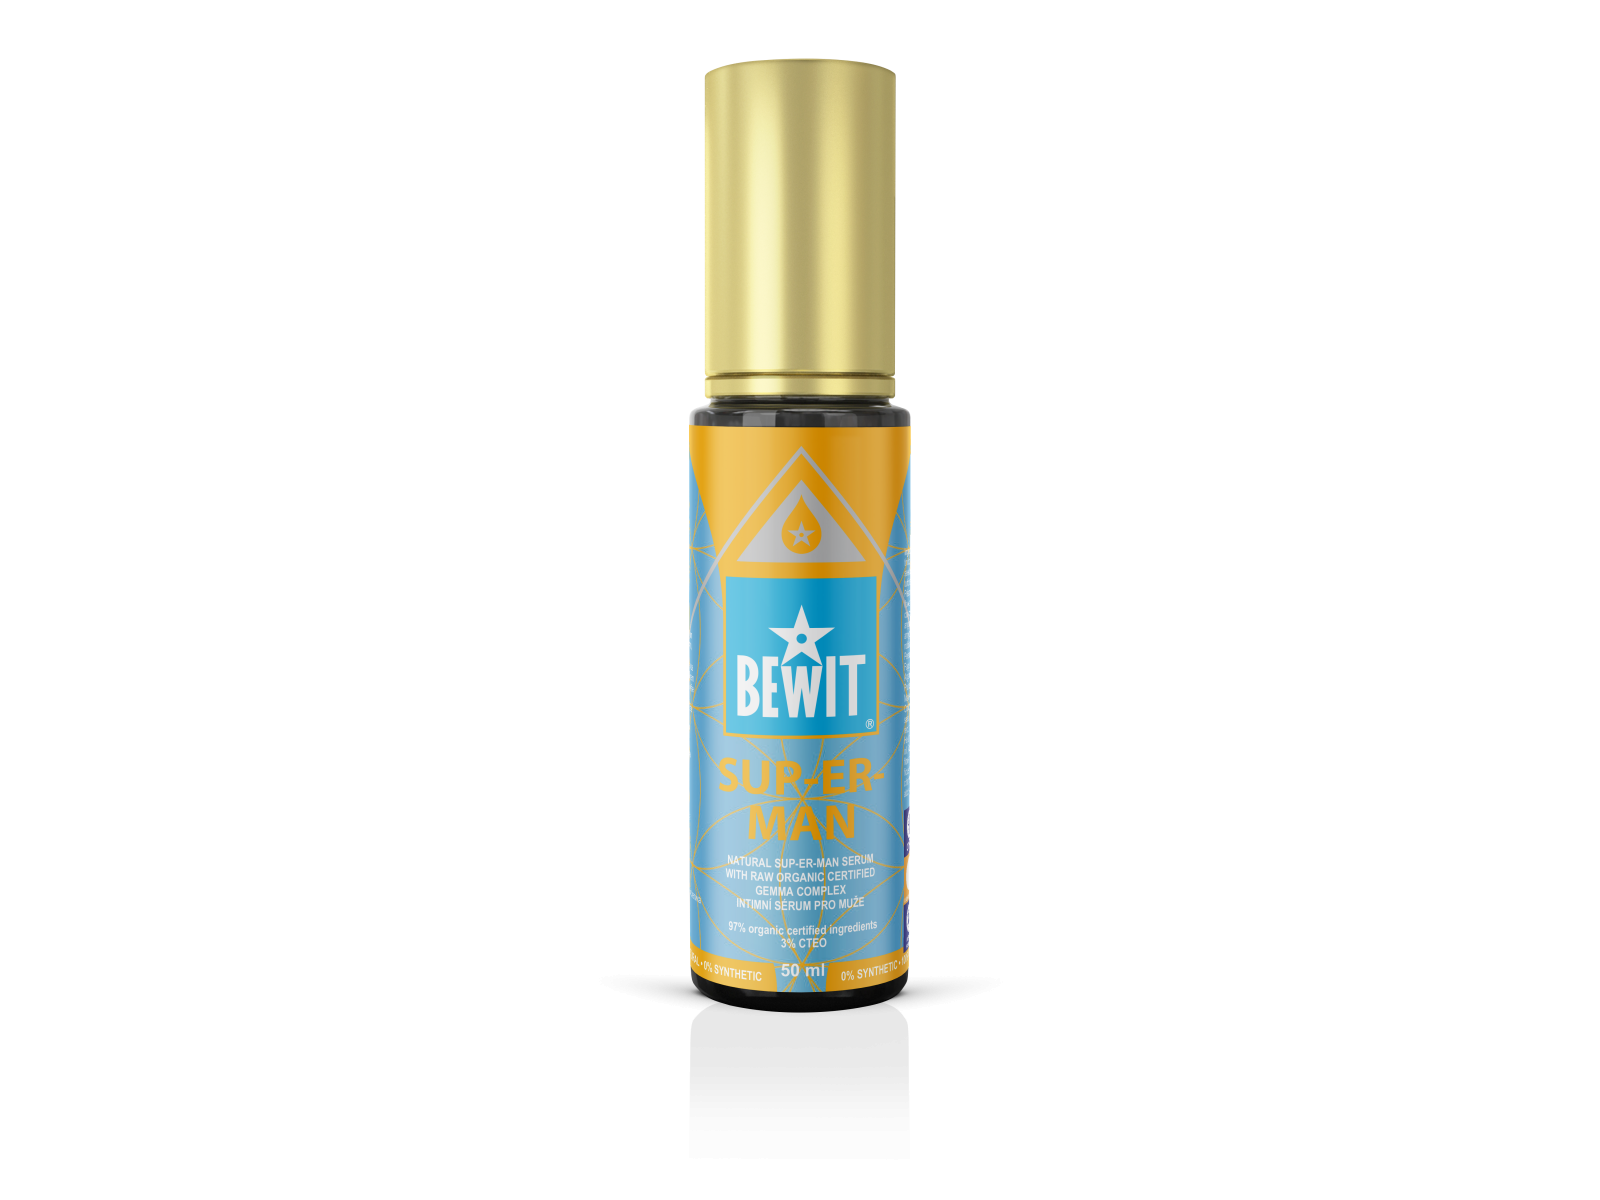 BEWIT® SUP-ER-MAN, 50 ML - An intimate serum for men